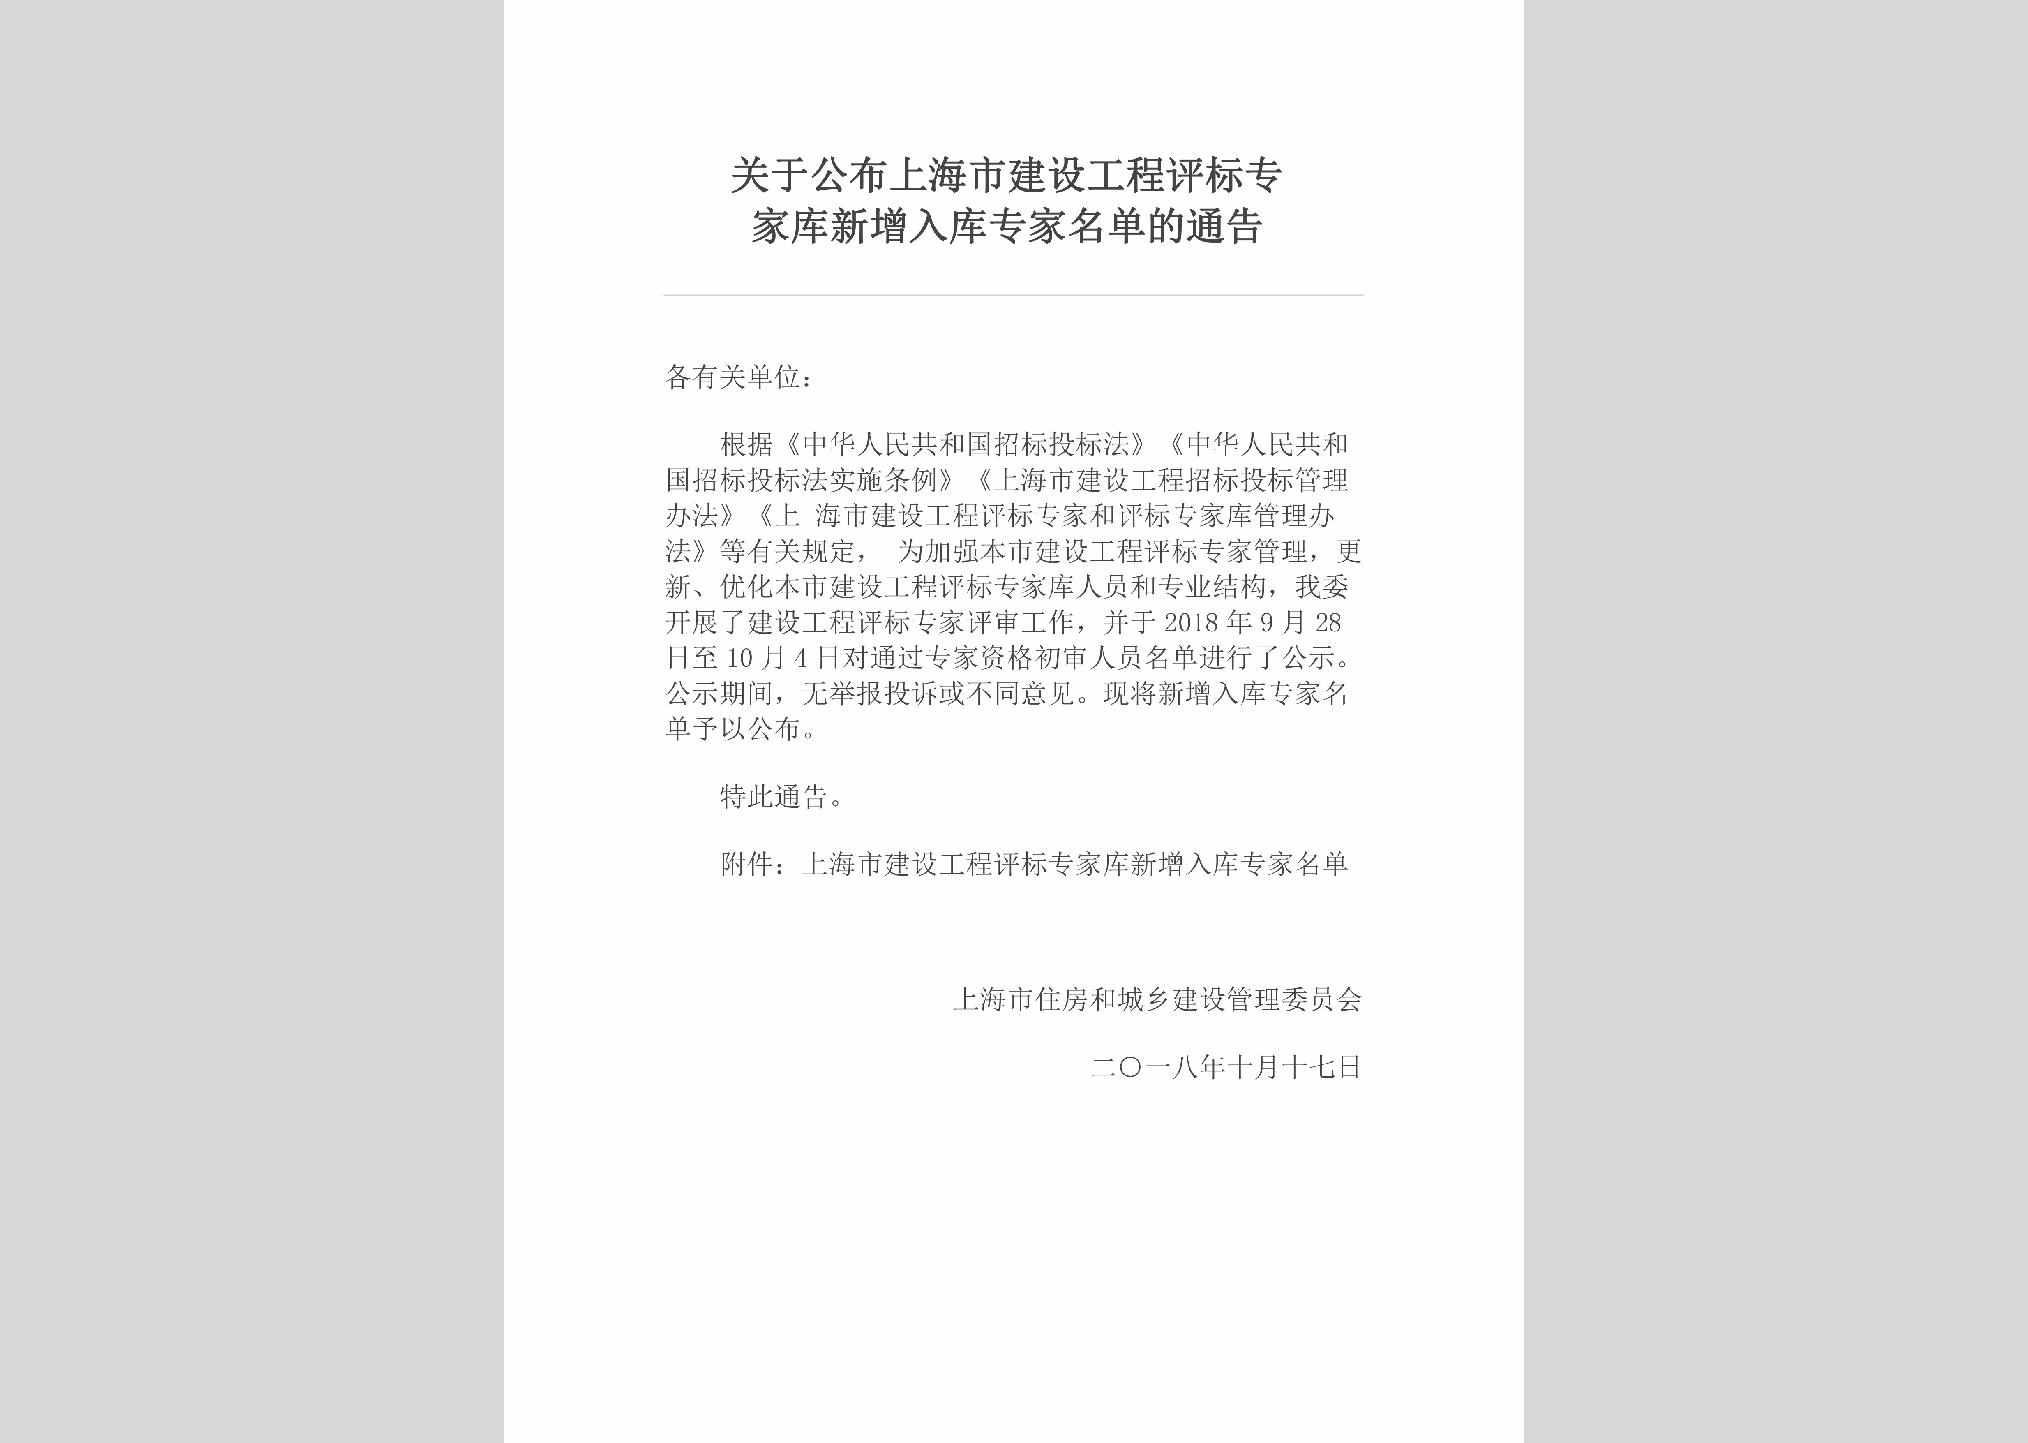 SH-JSGCPBZJ-2018：关于公布上海市建设工程评标专家库新增入库专家名单的通告